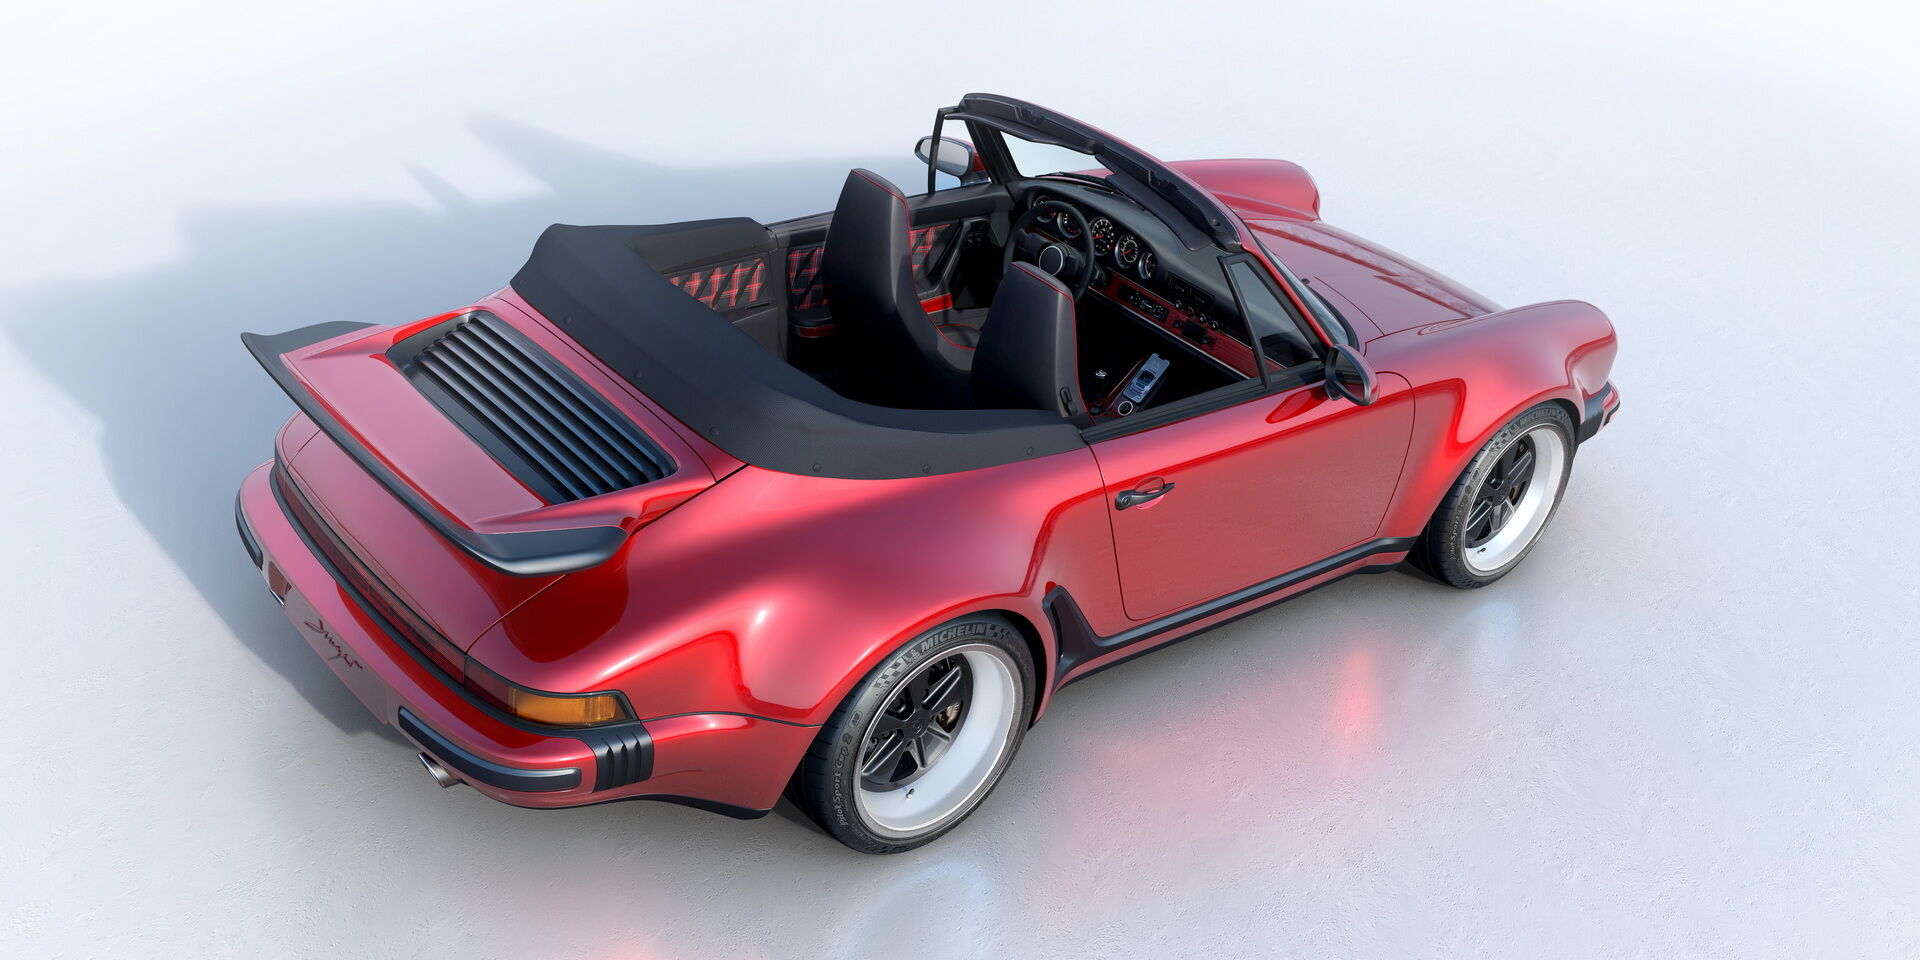 Кузов новинки изготовлен их карбонового волокна, а дизайн является современным отображением облика классического Porsche 930 Turbo